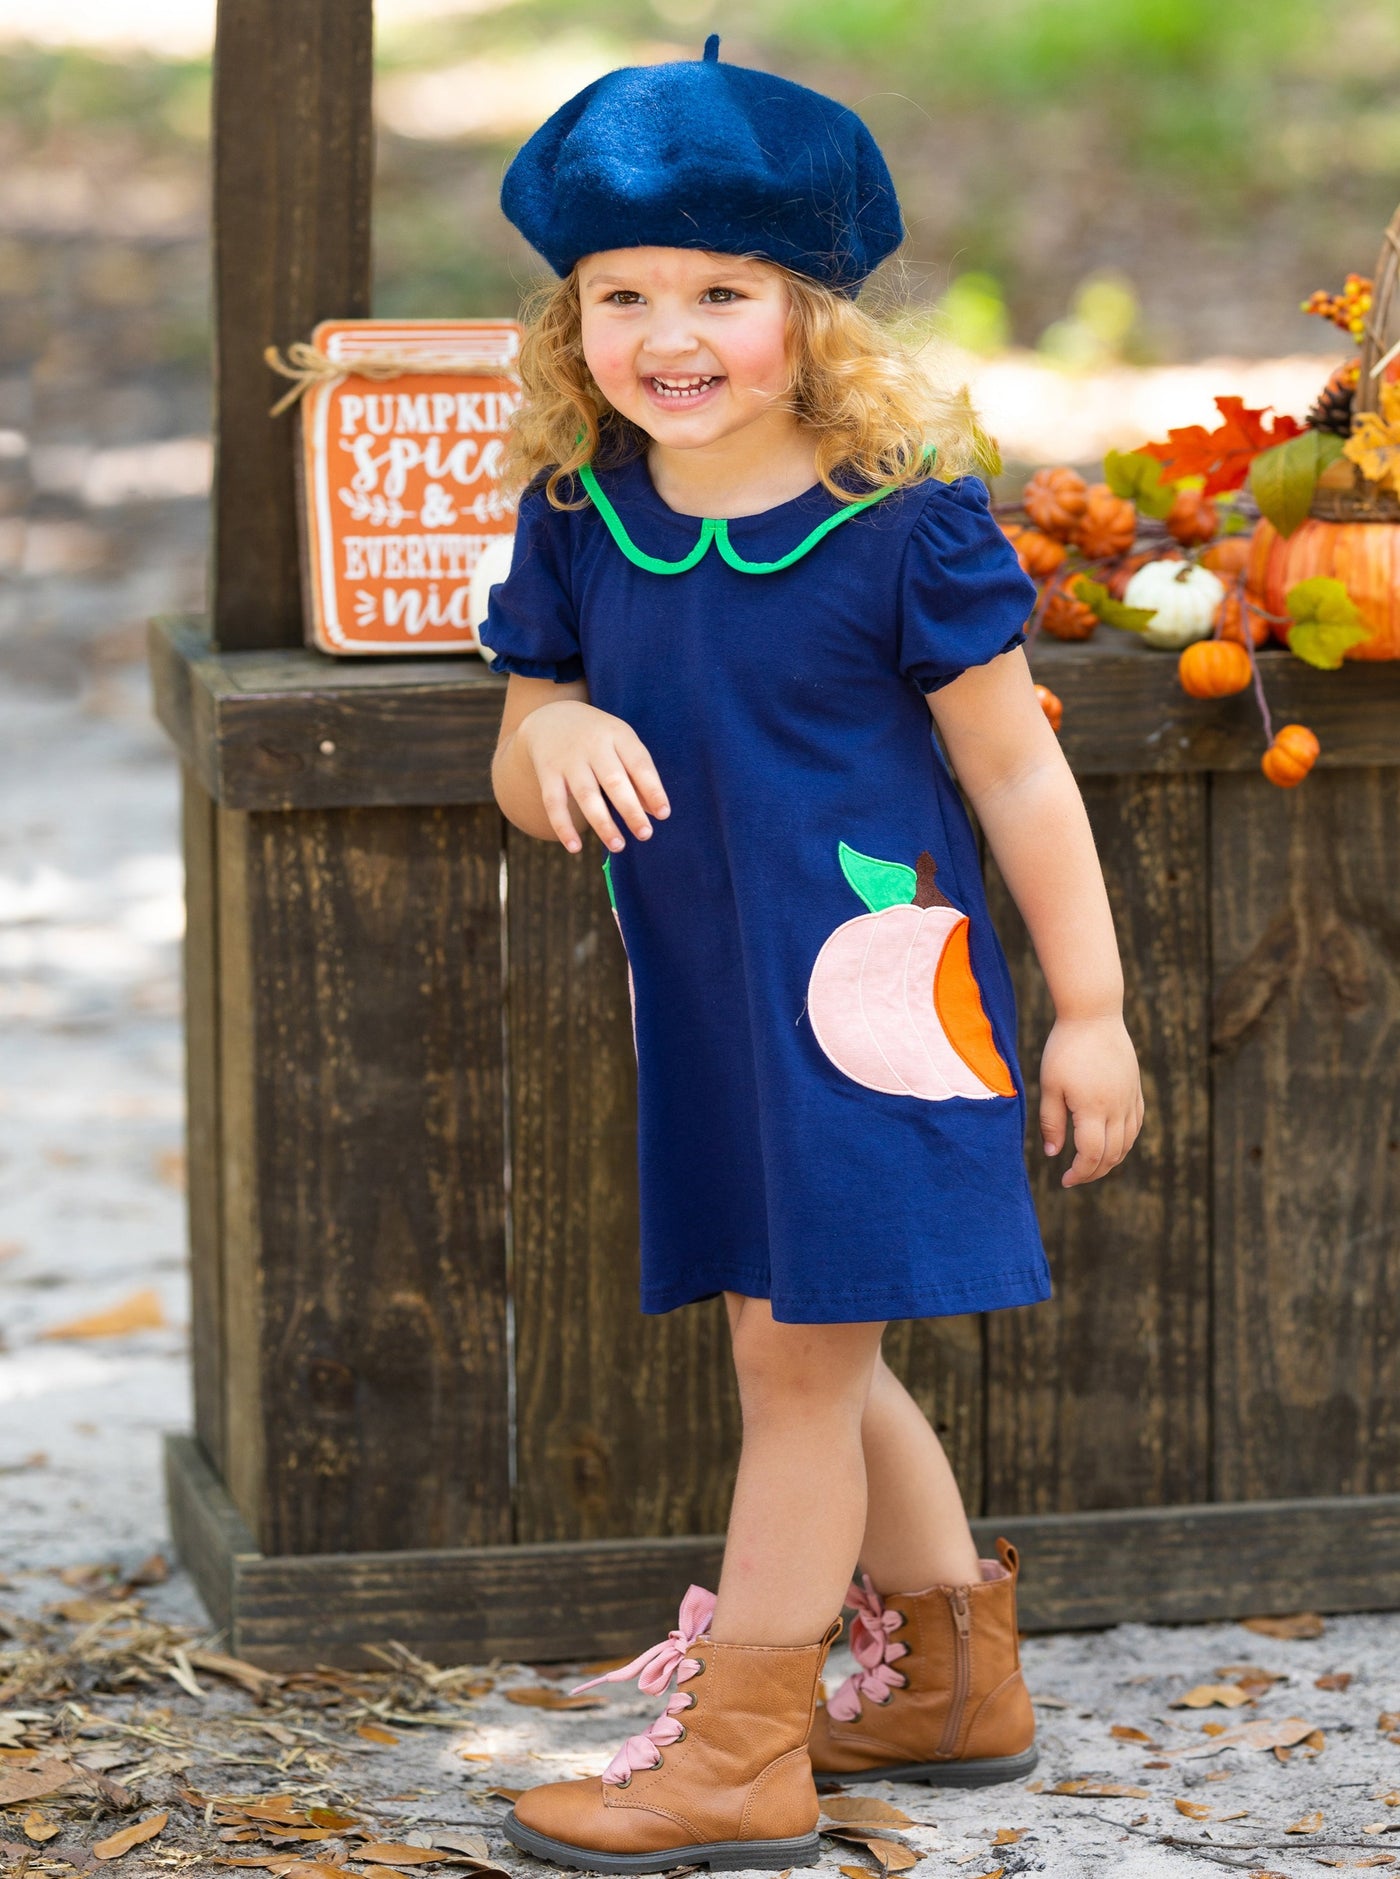 Girls Fall Pumpkin Patch Chambray A-Line Dress - Mia Belle Girls 